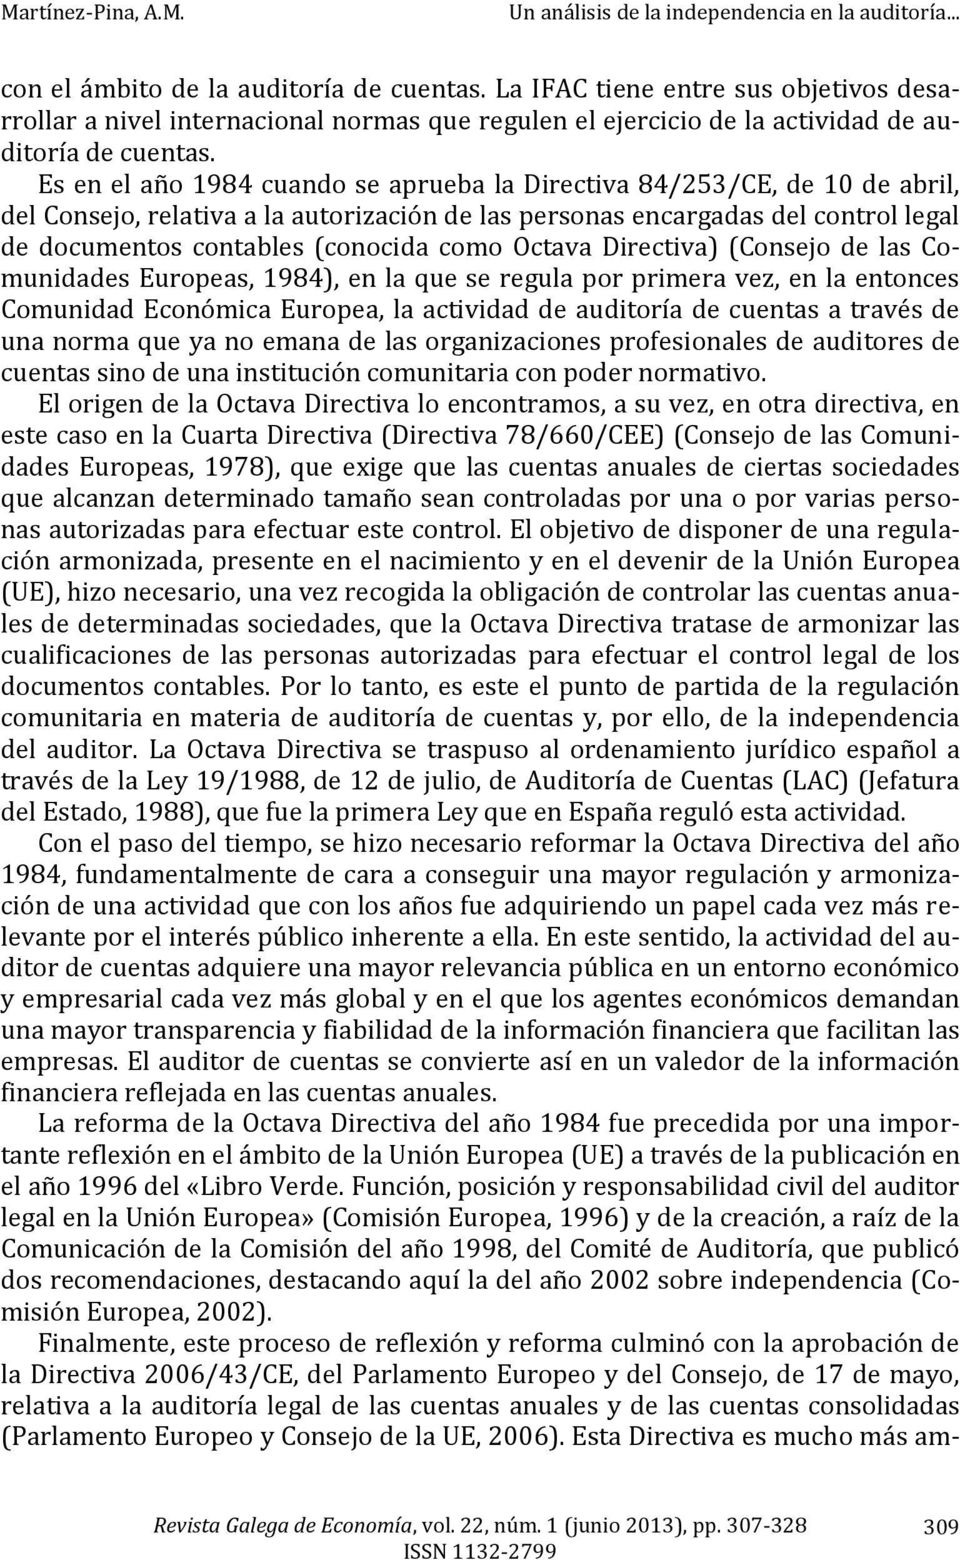 Octava Directiva) (Consejo de las Comunidades Europeas, 1984), en la que se regula por primera vez, en la entonces Comunidad Económica Europea, la actividad de auditoría de cuentas a través de una